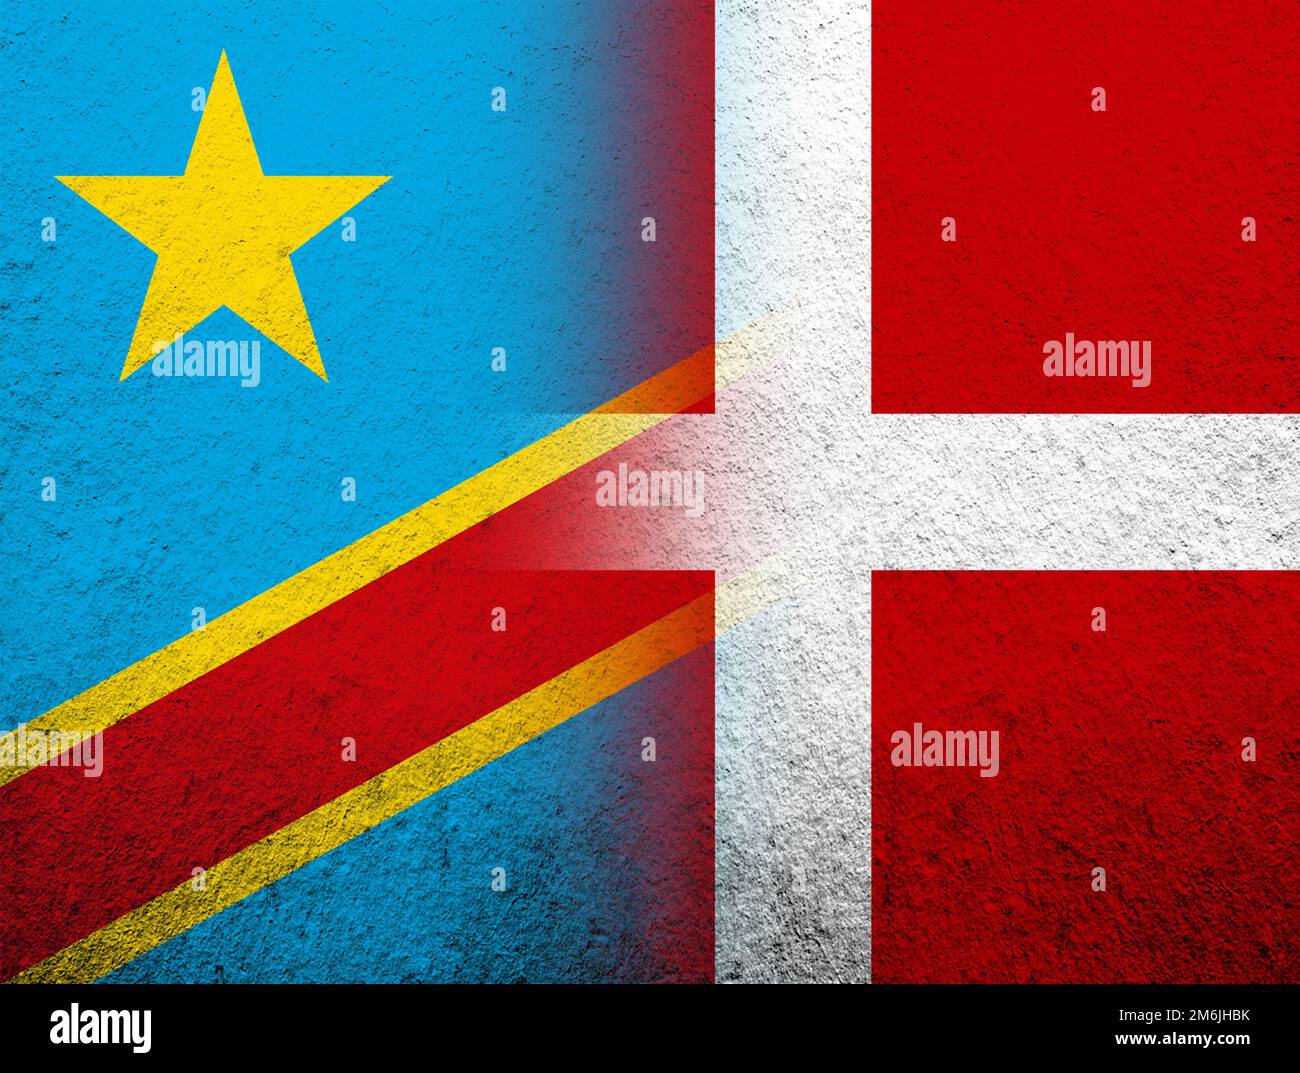 Le Royaume de Danemark drapeau national avec le drapeau national de la République démocratique du Congo. Grunge l'arrière-plan Banque D'Images